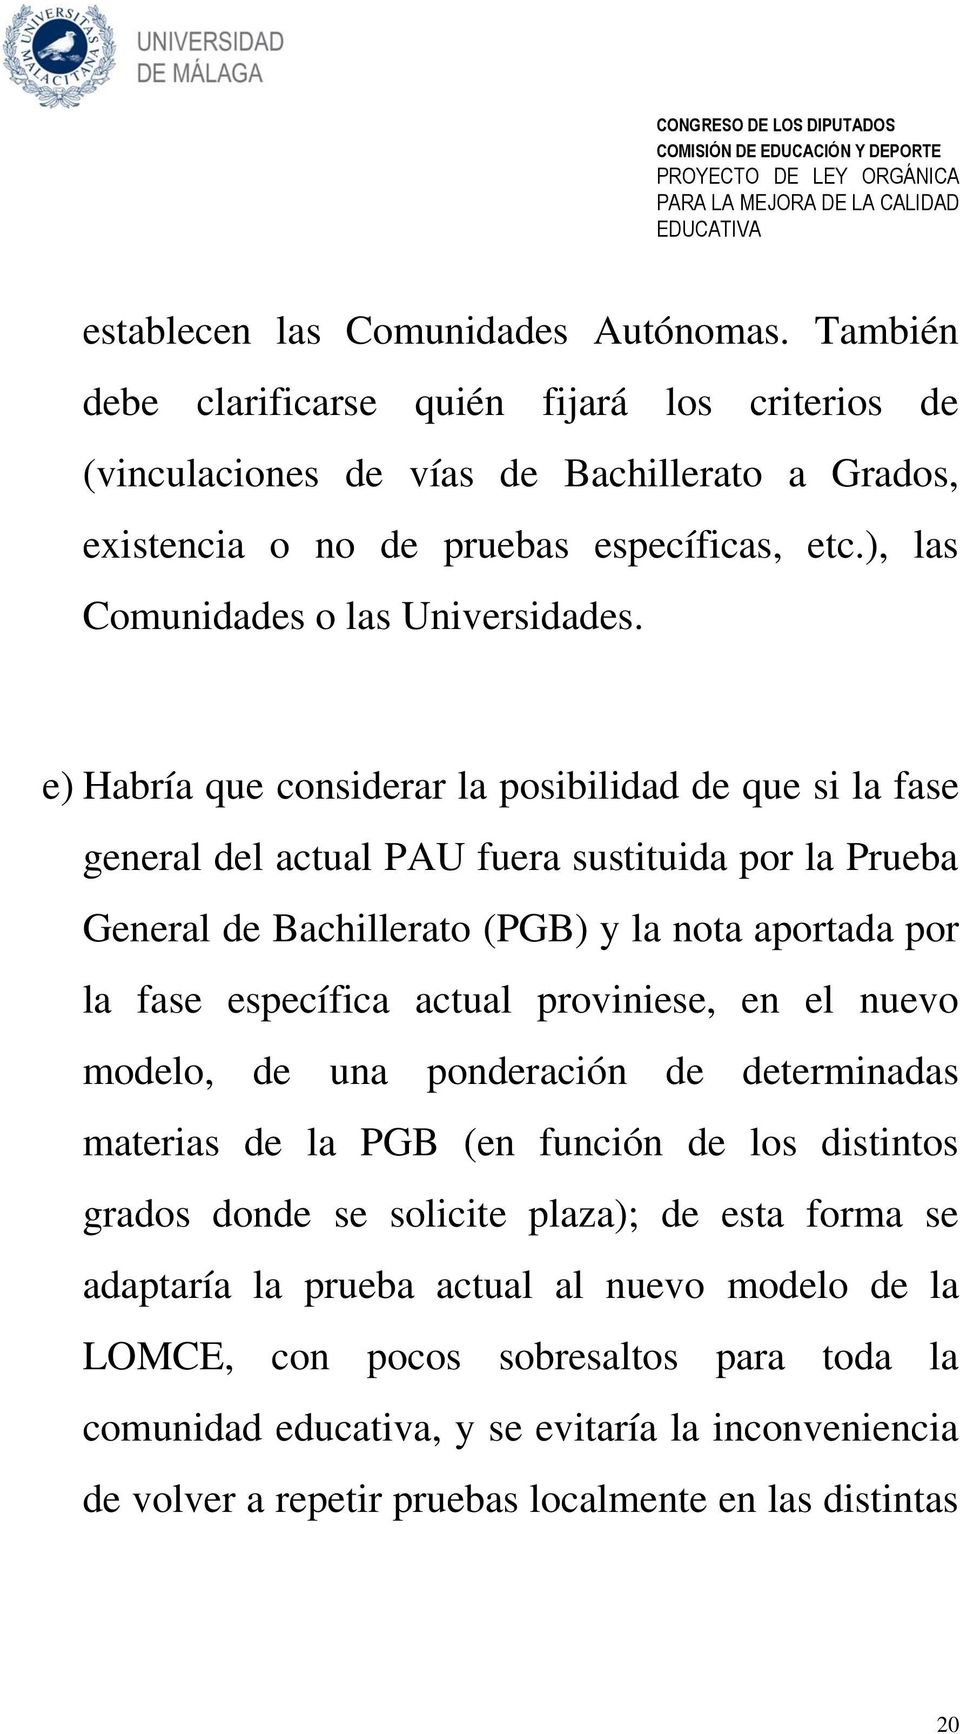 e) Habría que considerar la posibilidad de que si la fase general del actual PAU fuera sustituida por la Prueba General de Bachillerato (PGB) y la nota aportada por la fase específica actual